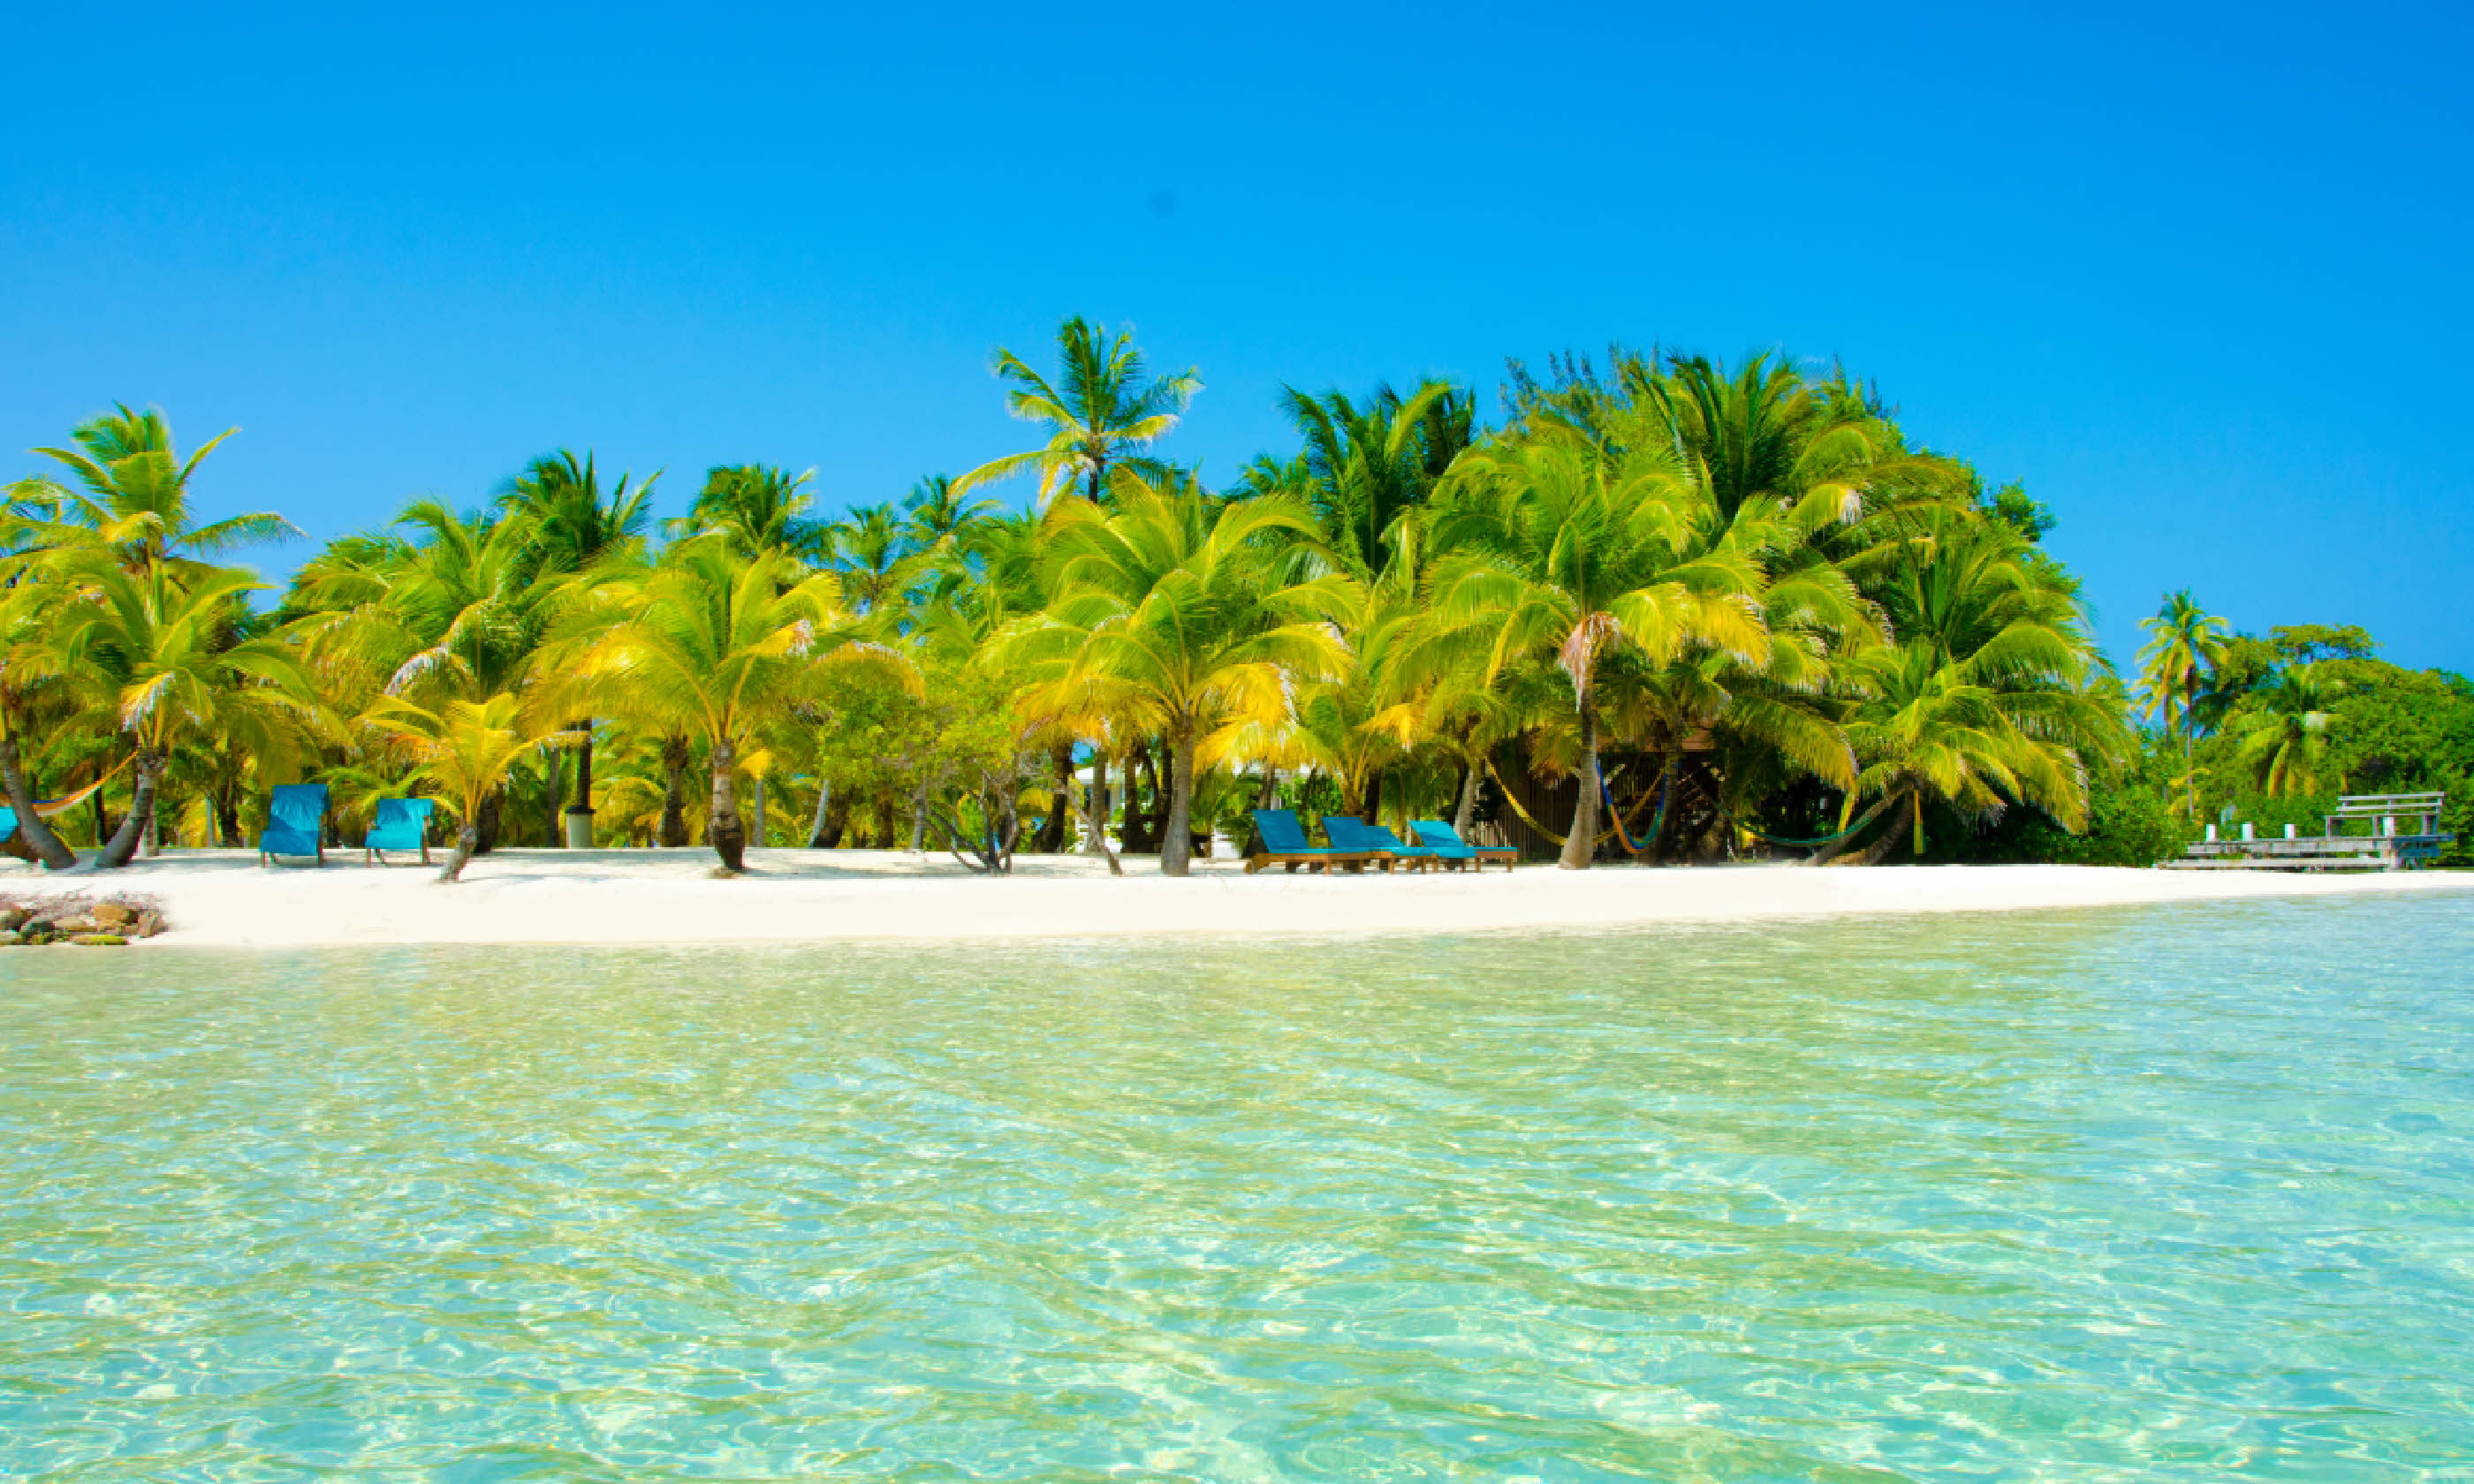 South Water Caye, Belize (Shutterstock)